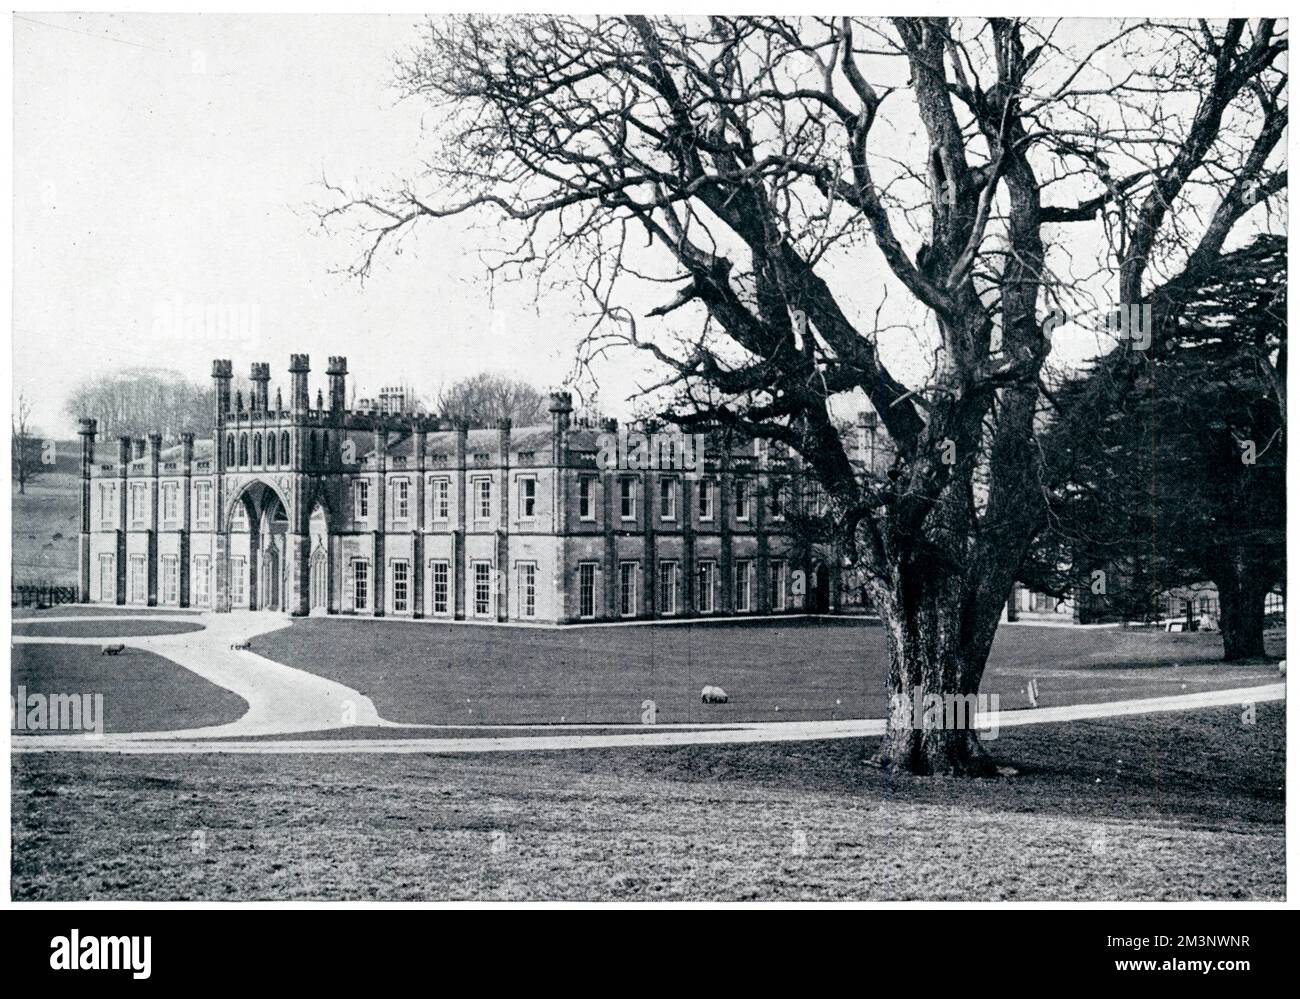 Blick auf die Donington Hall, in der Nähe von Derby, berühmt in den Jahren 1914 - 1918 als Internierungslager für deutsche Offiziere, die 1939 erneut von der Regierung übernommen wurden, um denselben Zweck im Zweiten Weltkrieg zu erfüllen. Datum: 1939 Stockfoto